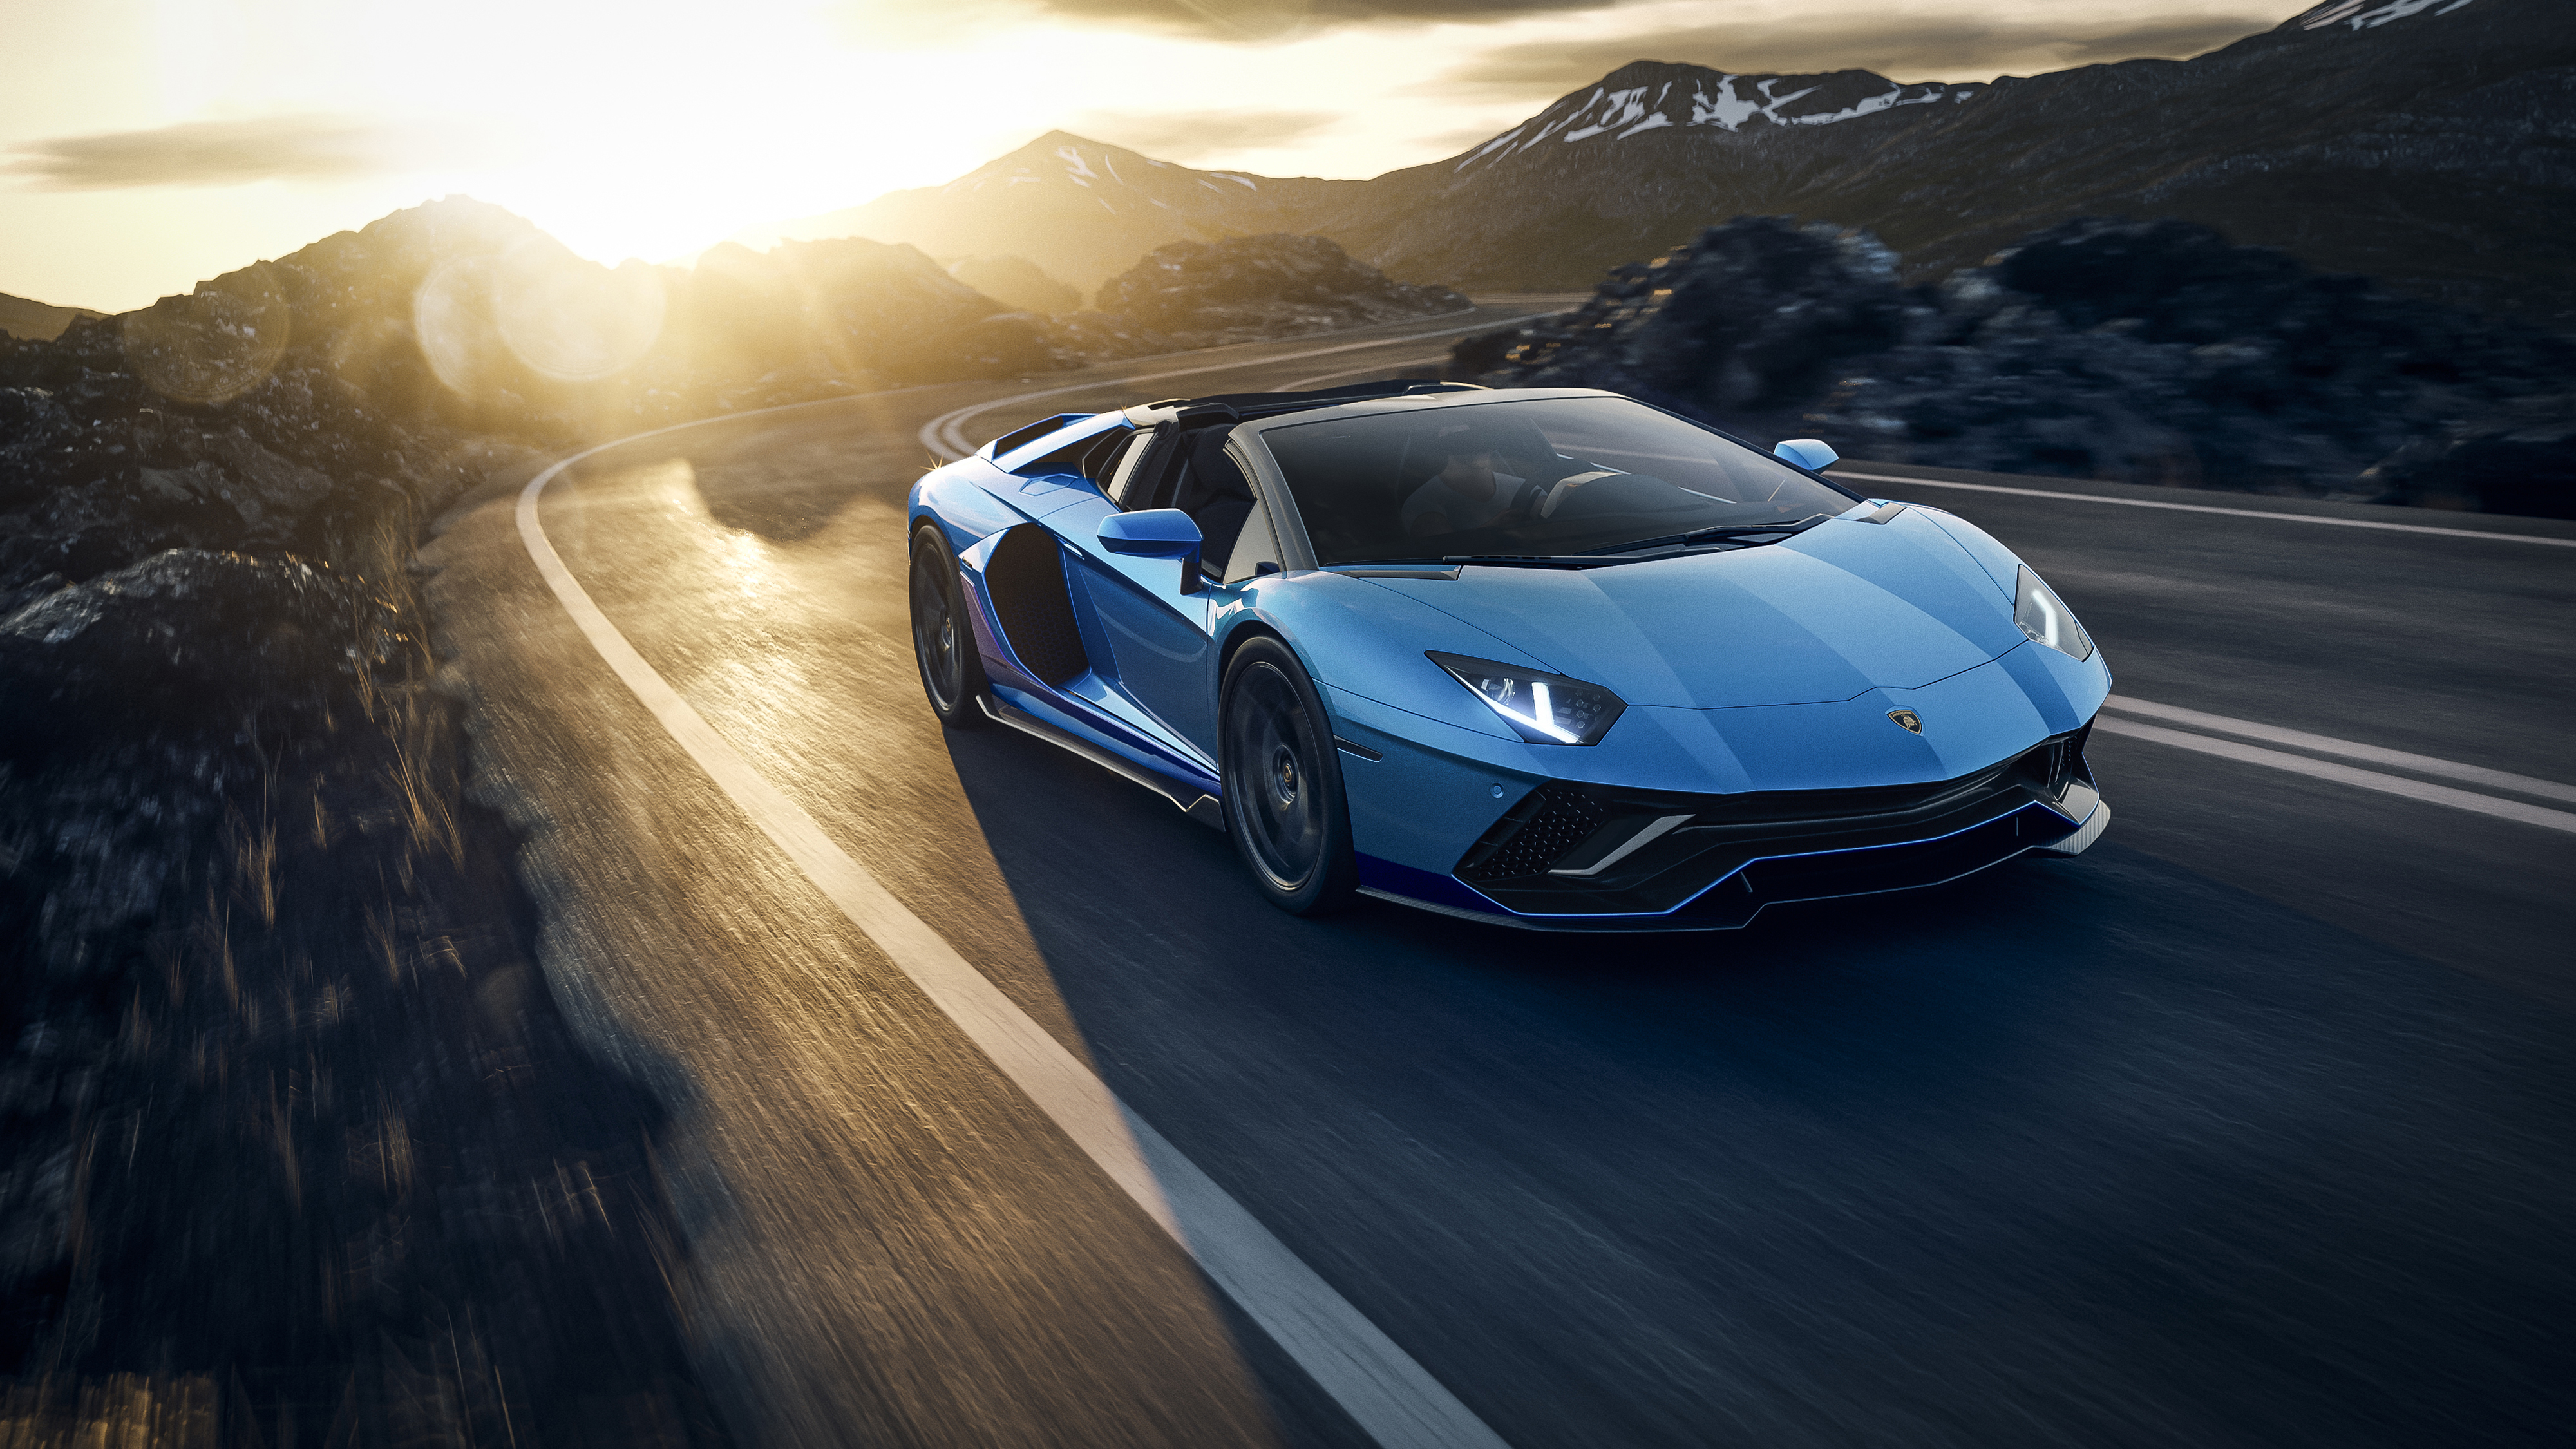 Lamborghini - High Definition, High Resolution HD Wallpapers : High  Definition, High Resolution HD Wallpapers